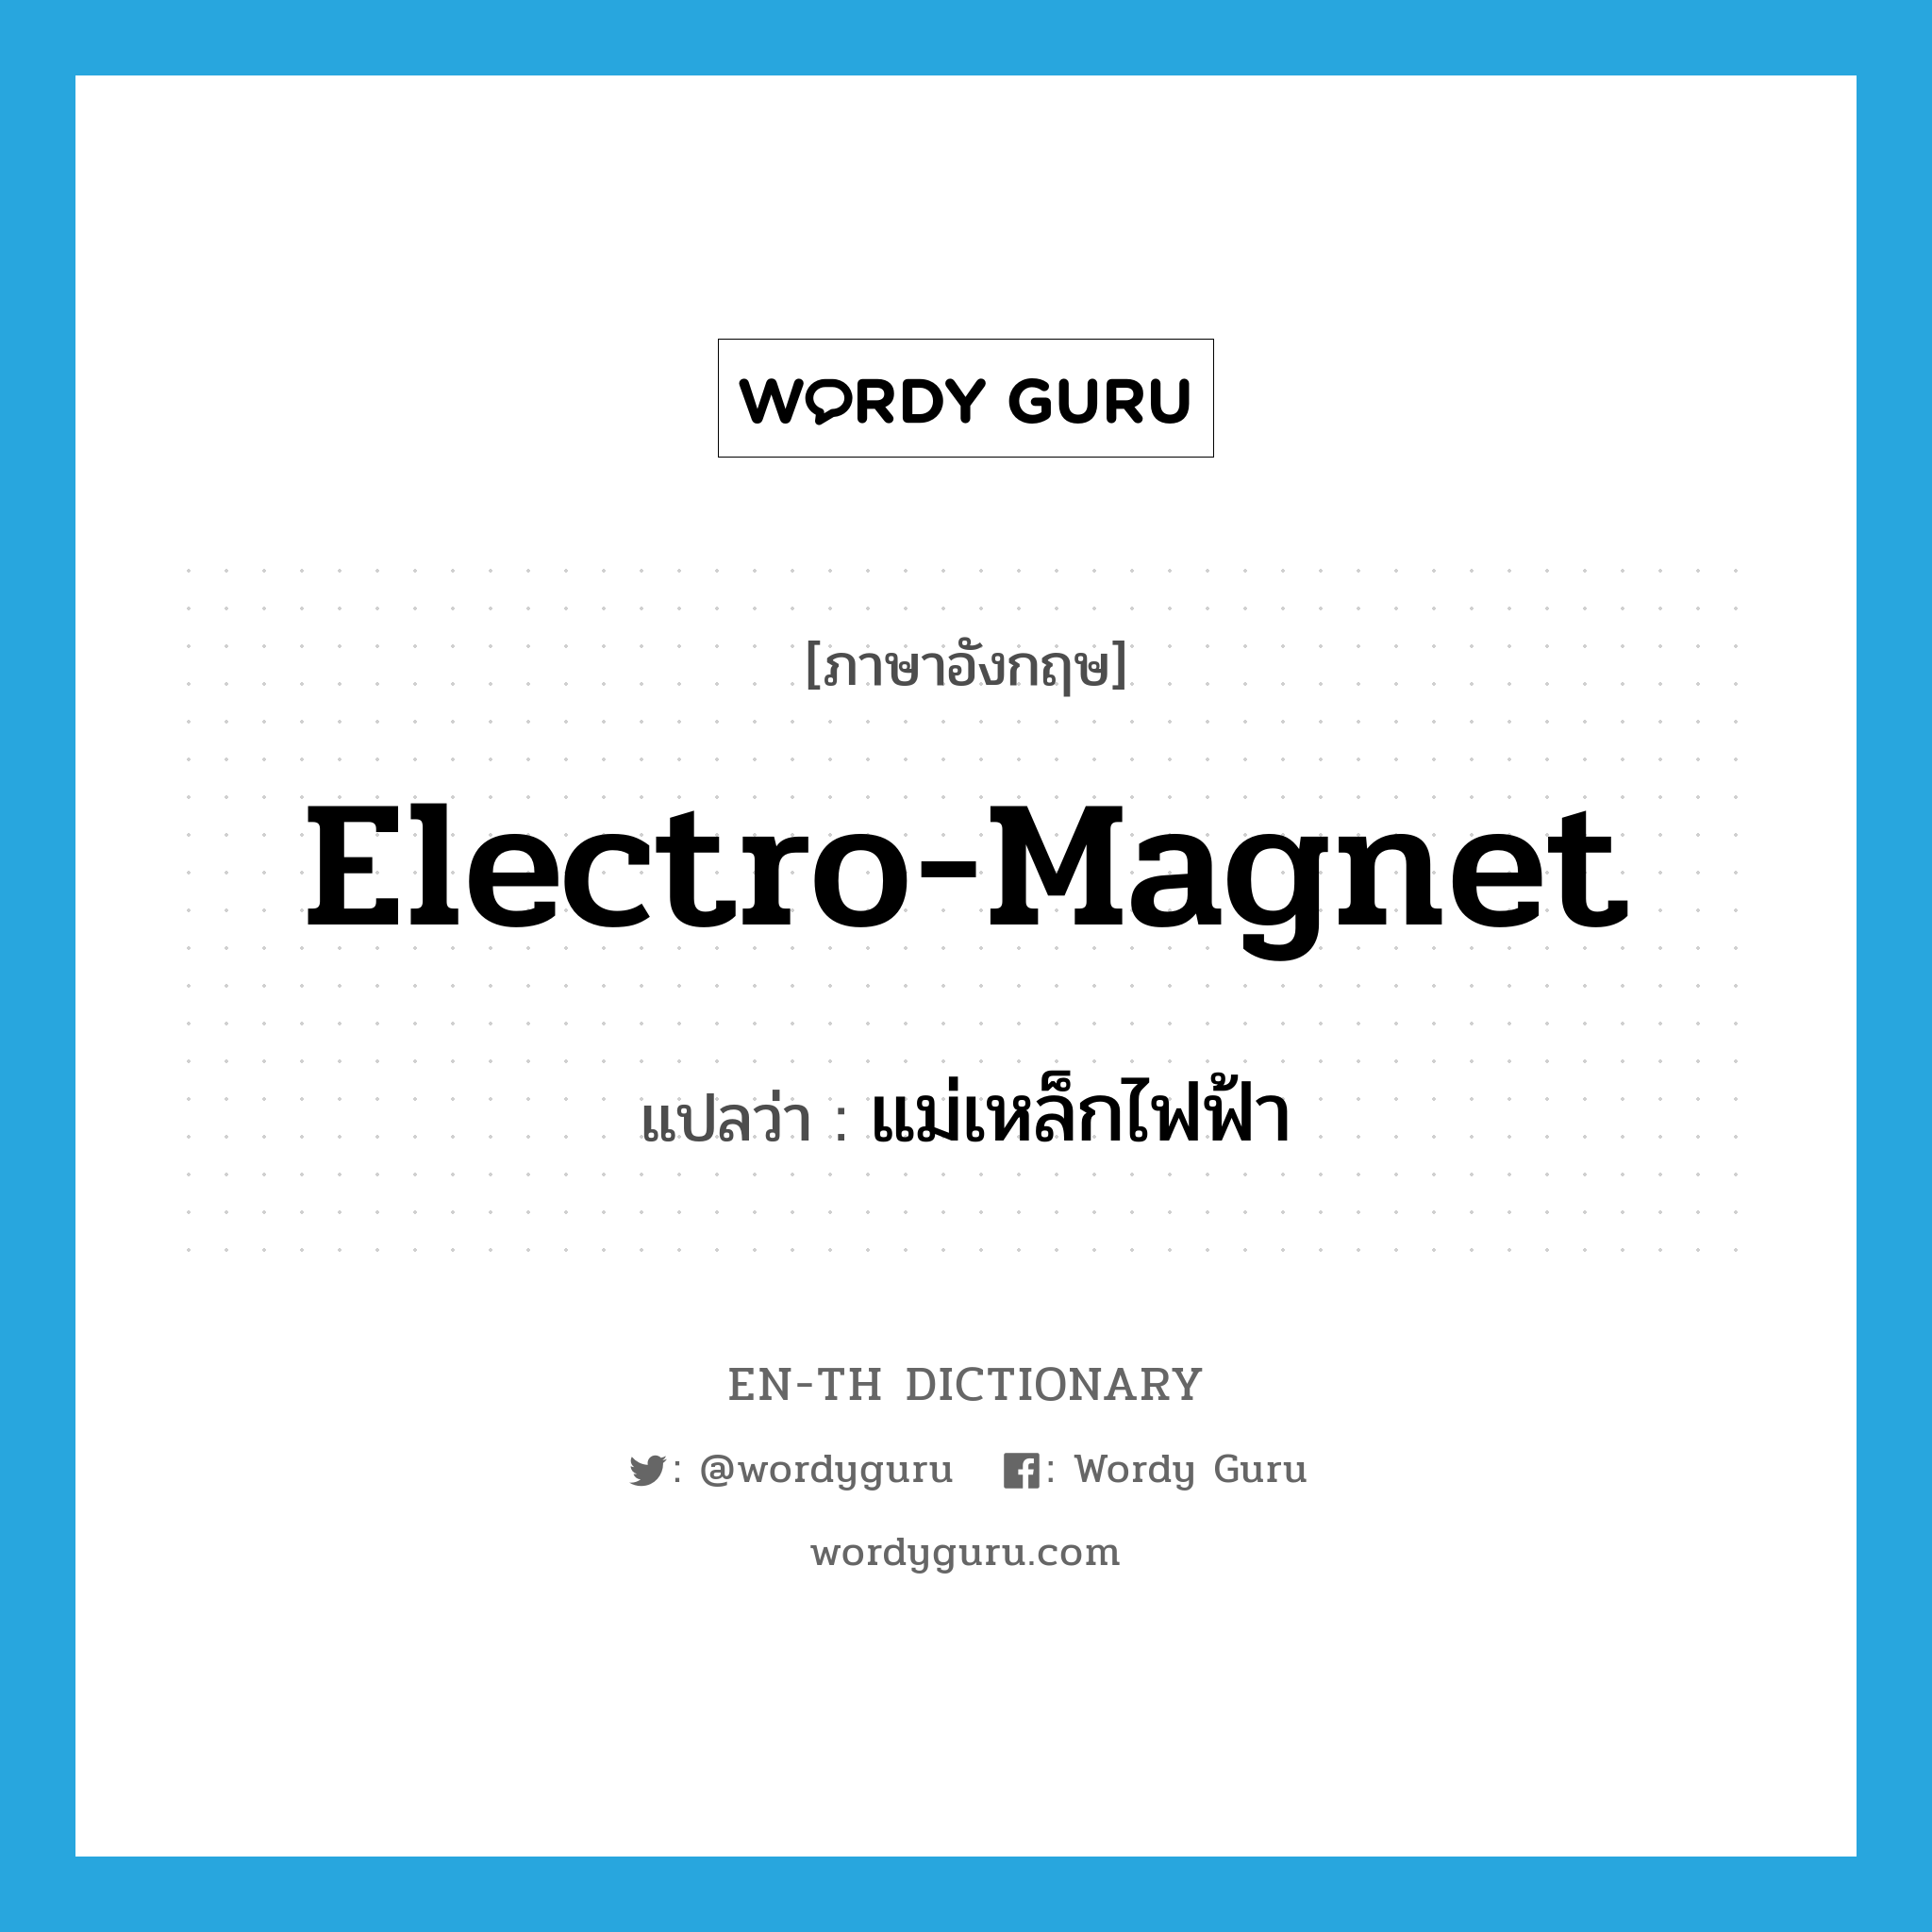 แม่เหล็กไฟฟ้า ภาษาอังกฤษ?, คำศัพท์ภาษาอังกฤษ แม่เหล็กไฟฟ้า แปลว่า electro-magnet ประเภท N หมวด N